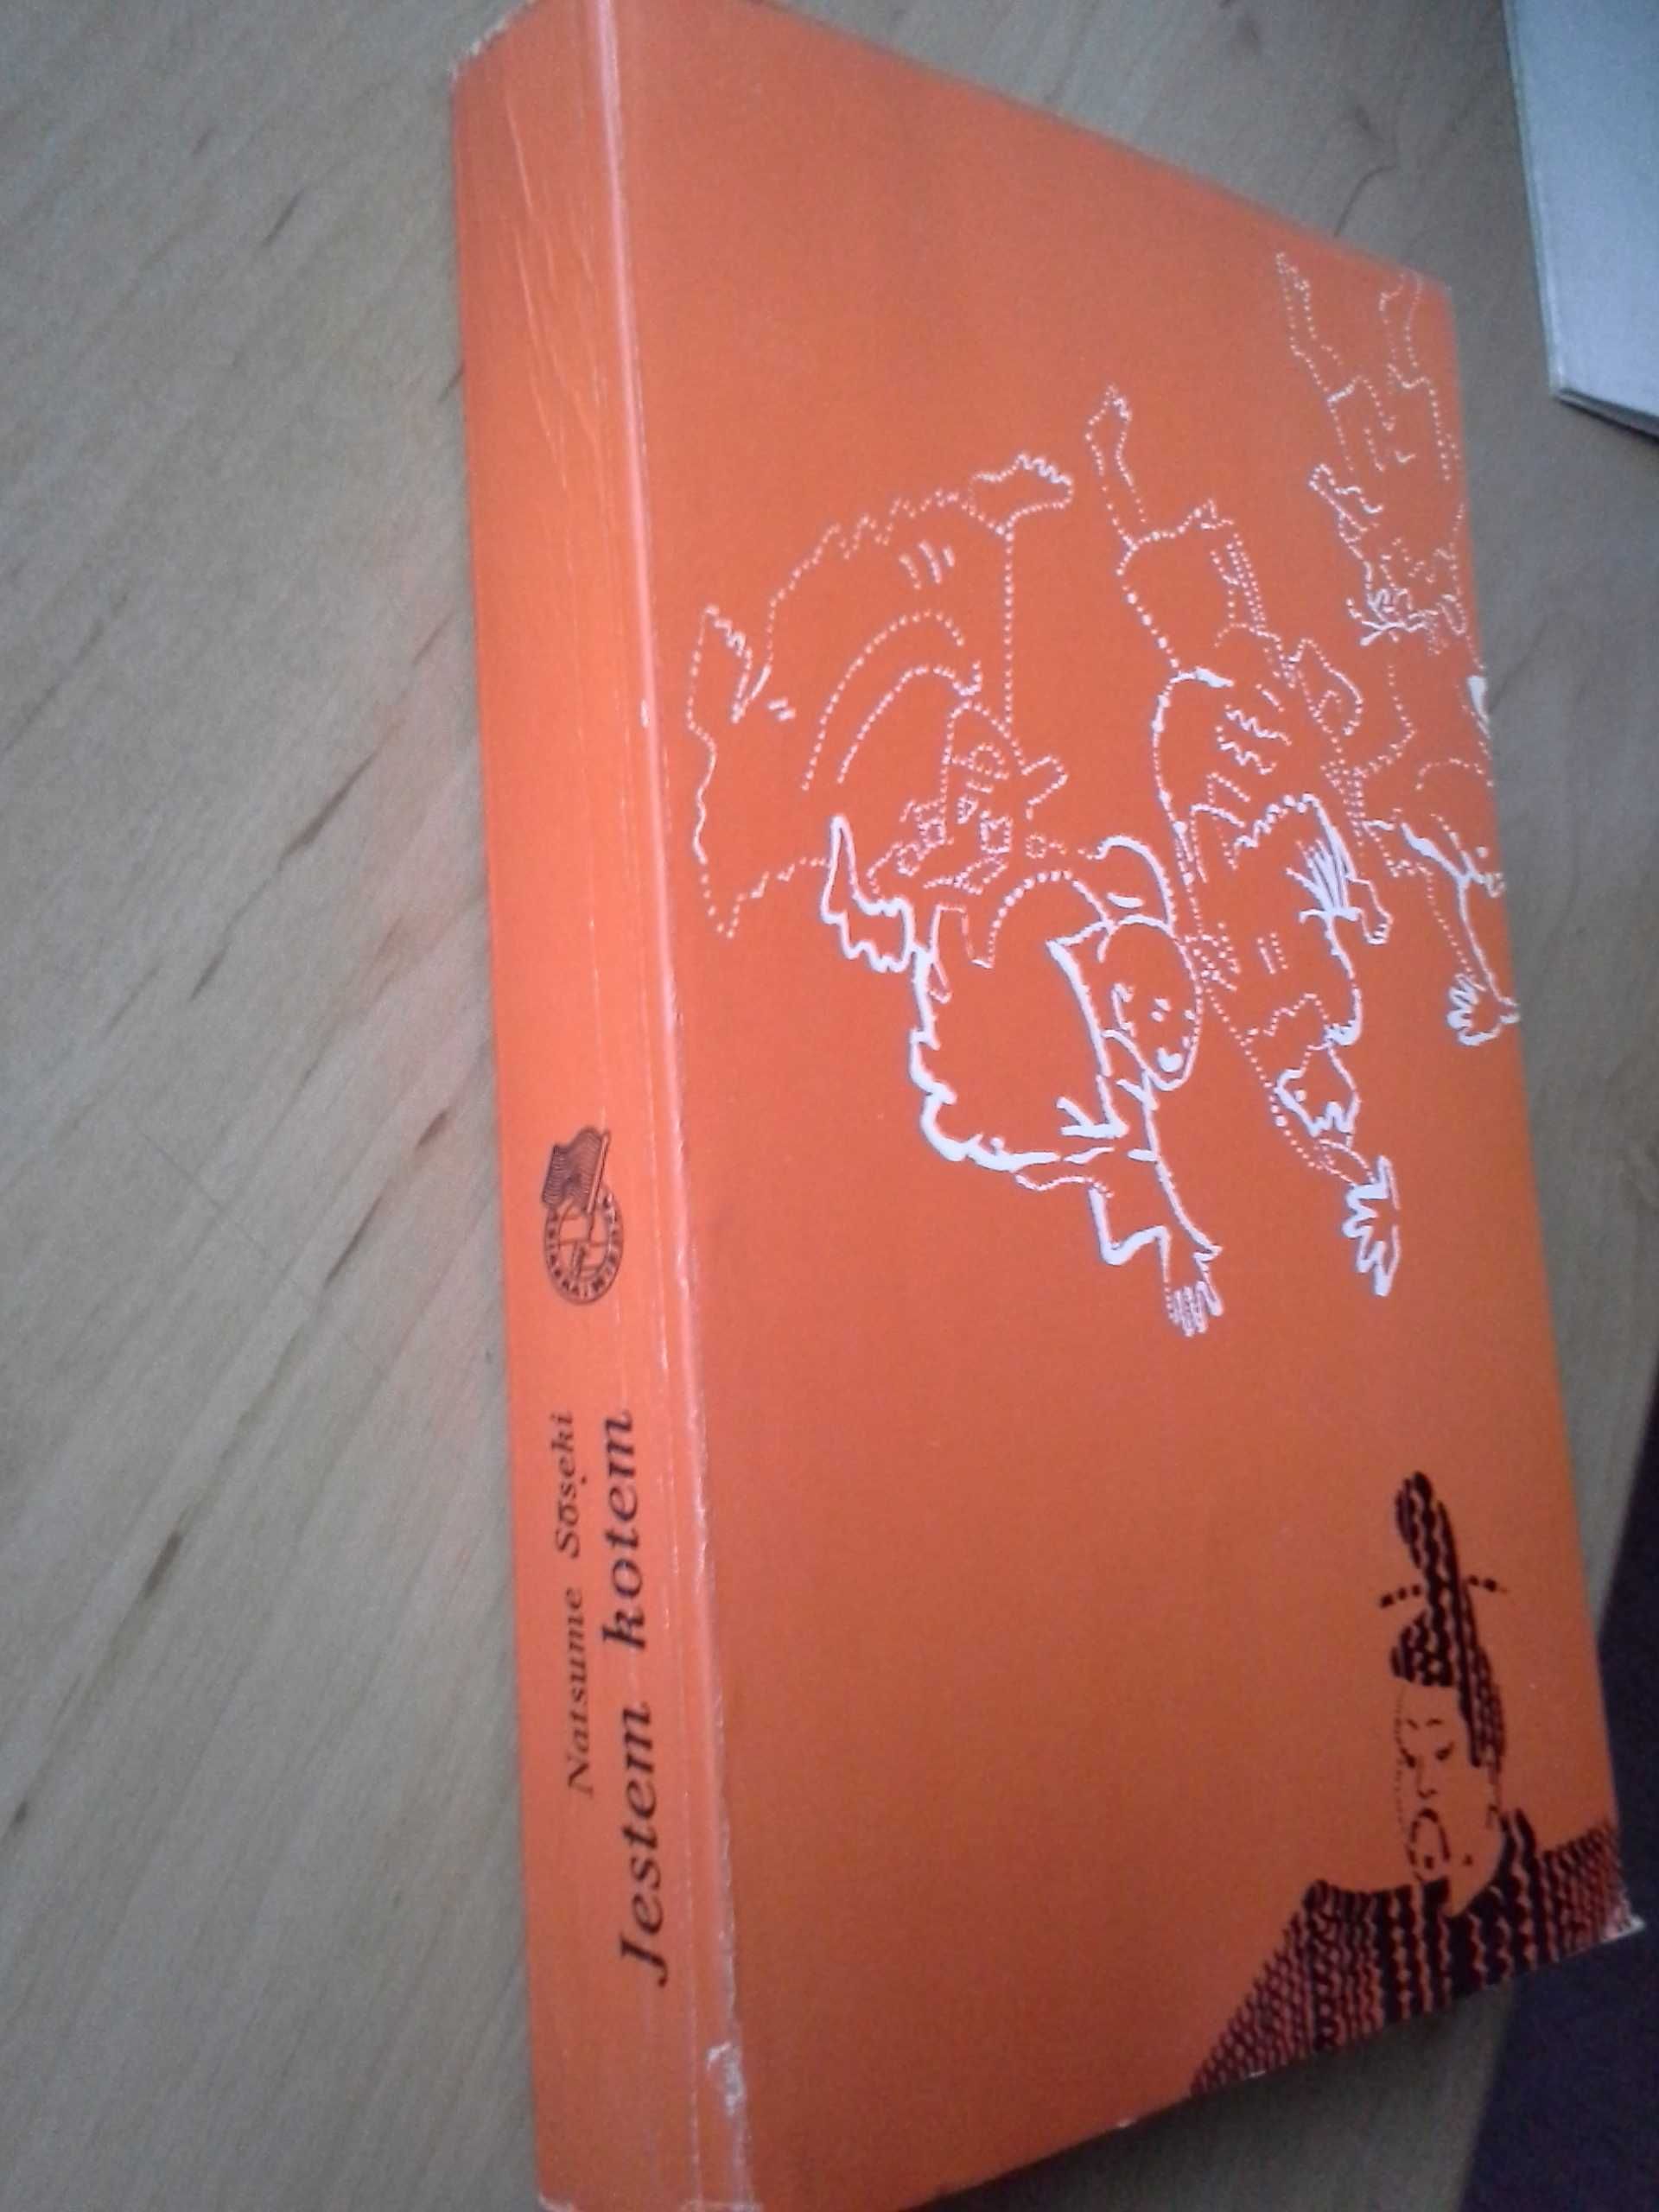 Jestem Kotem, Natsume Soseki, wydanie pierwsze, literatura japońska